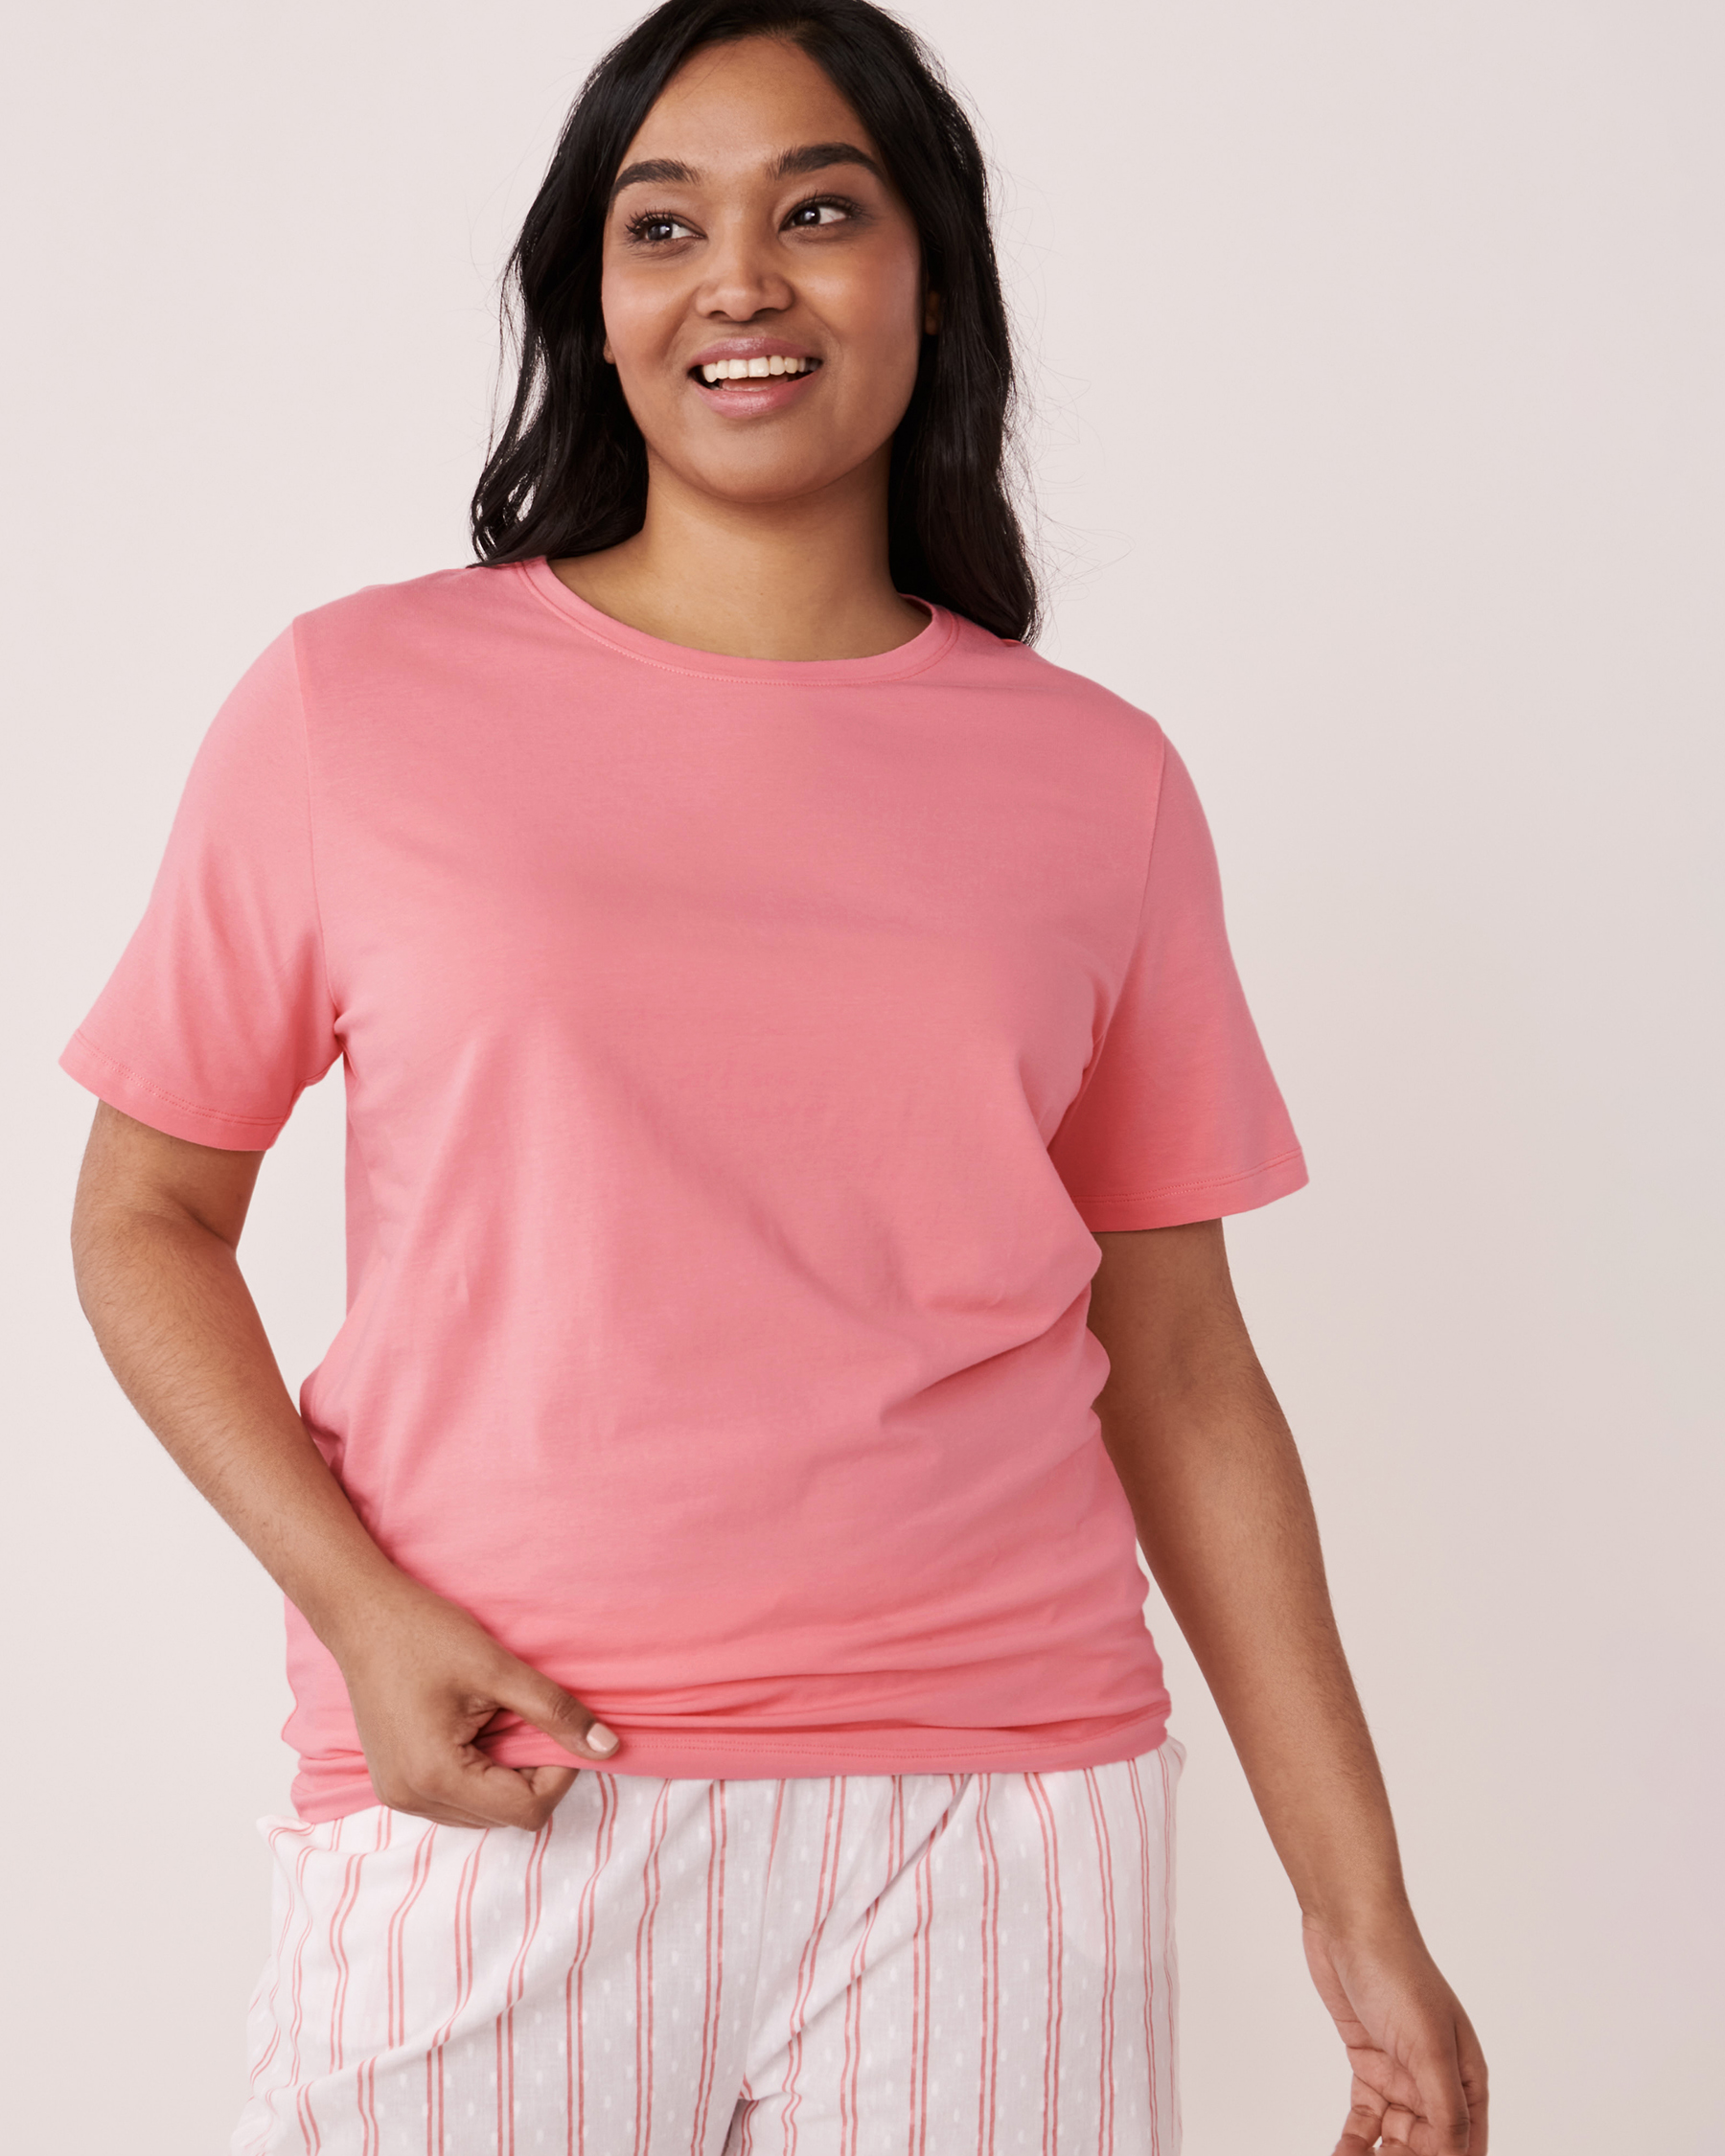 LA VIE EN ROSE Crew Neck T-shirt Flamingo pink 40100294 - View1